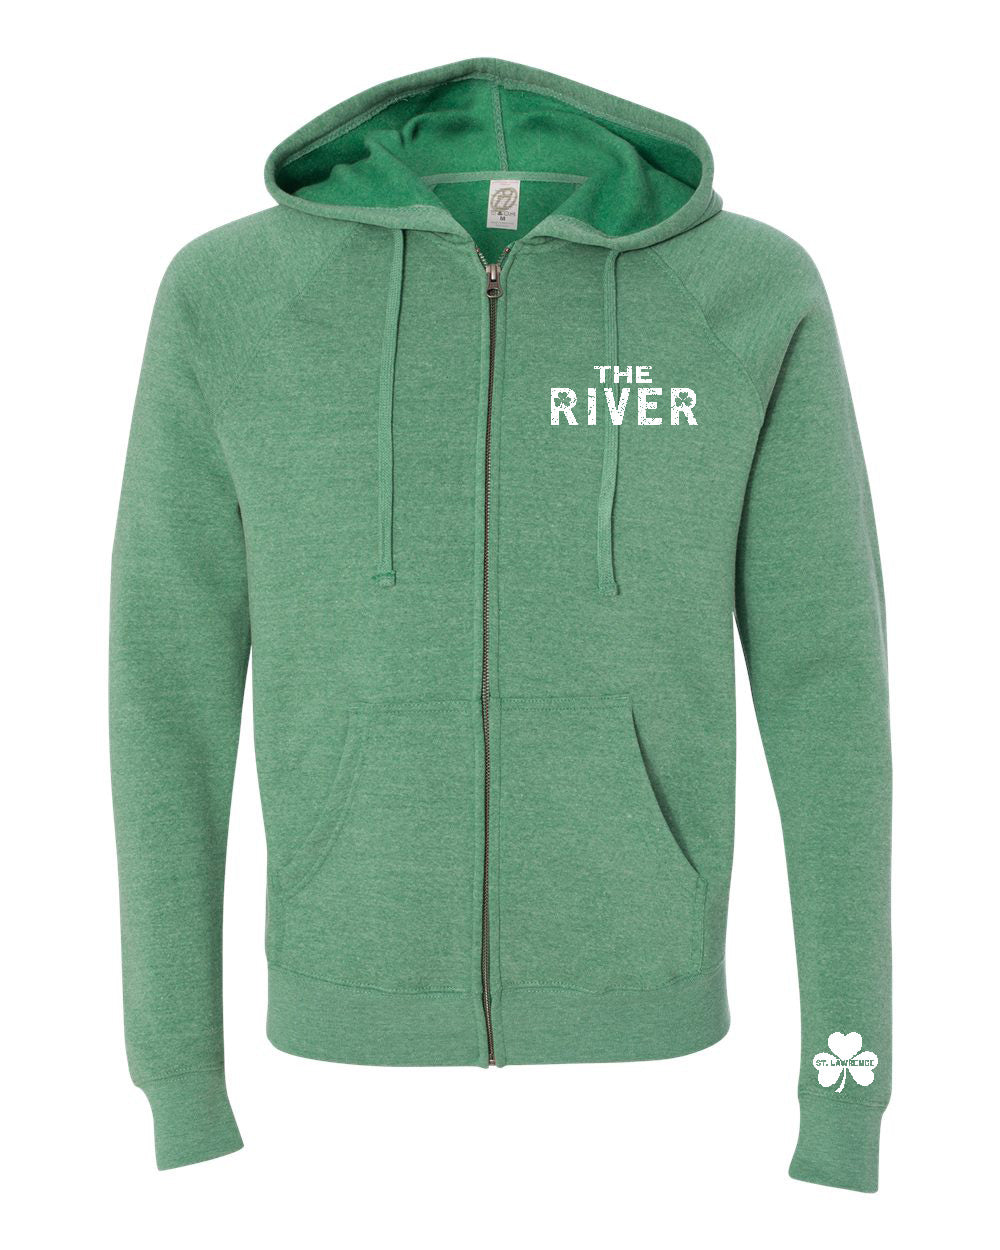 Irish River Zip Hoodie